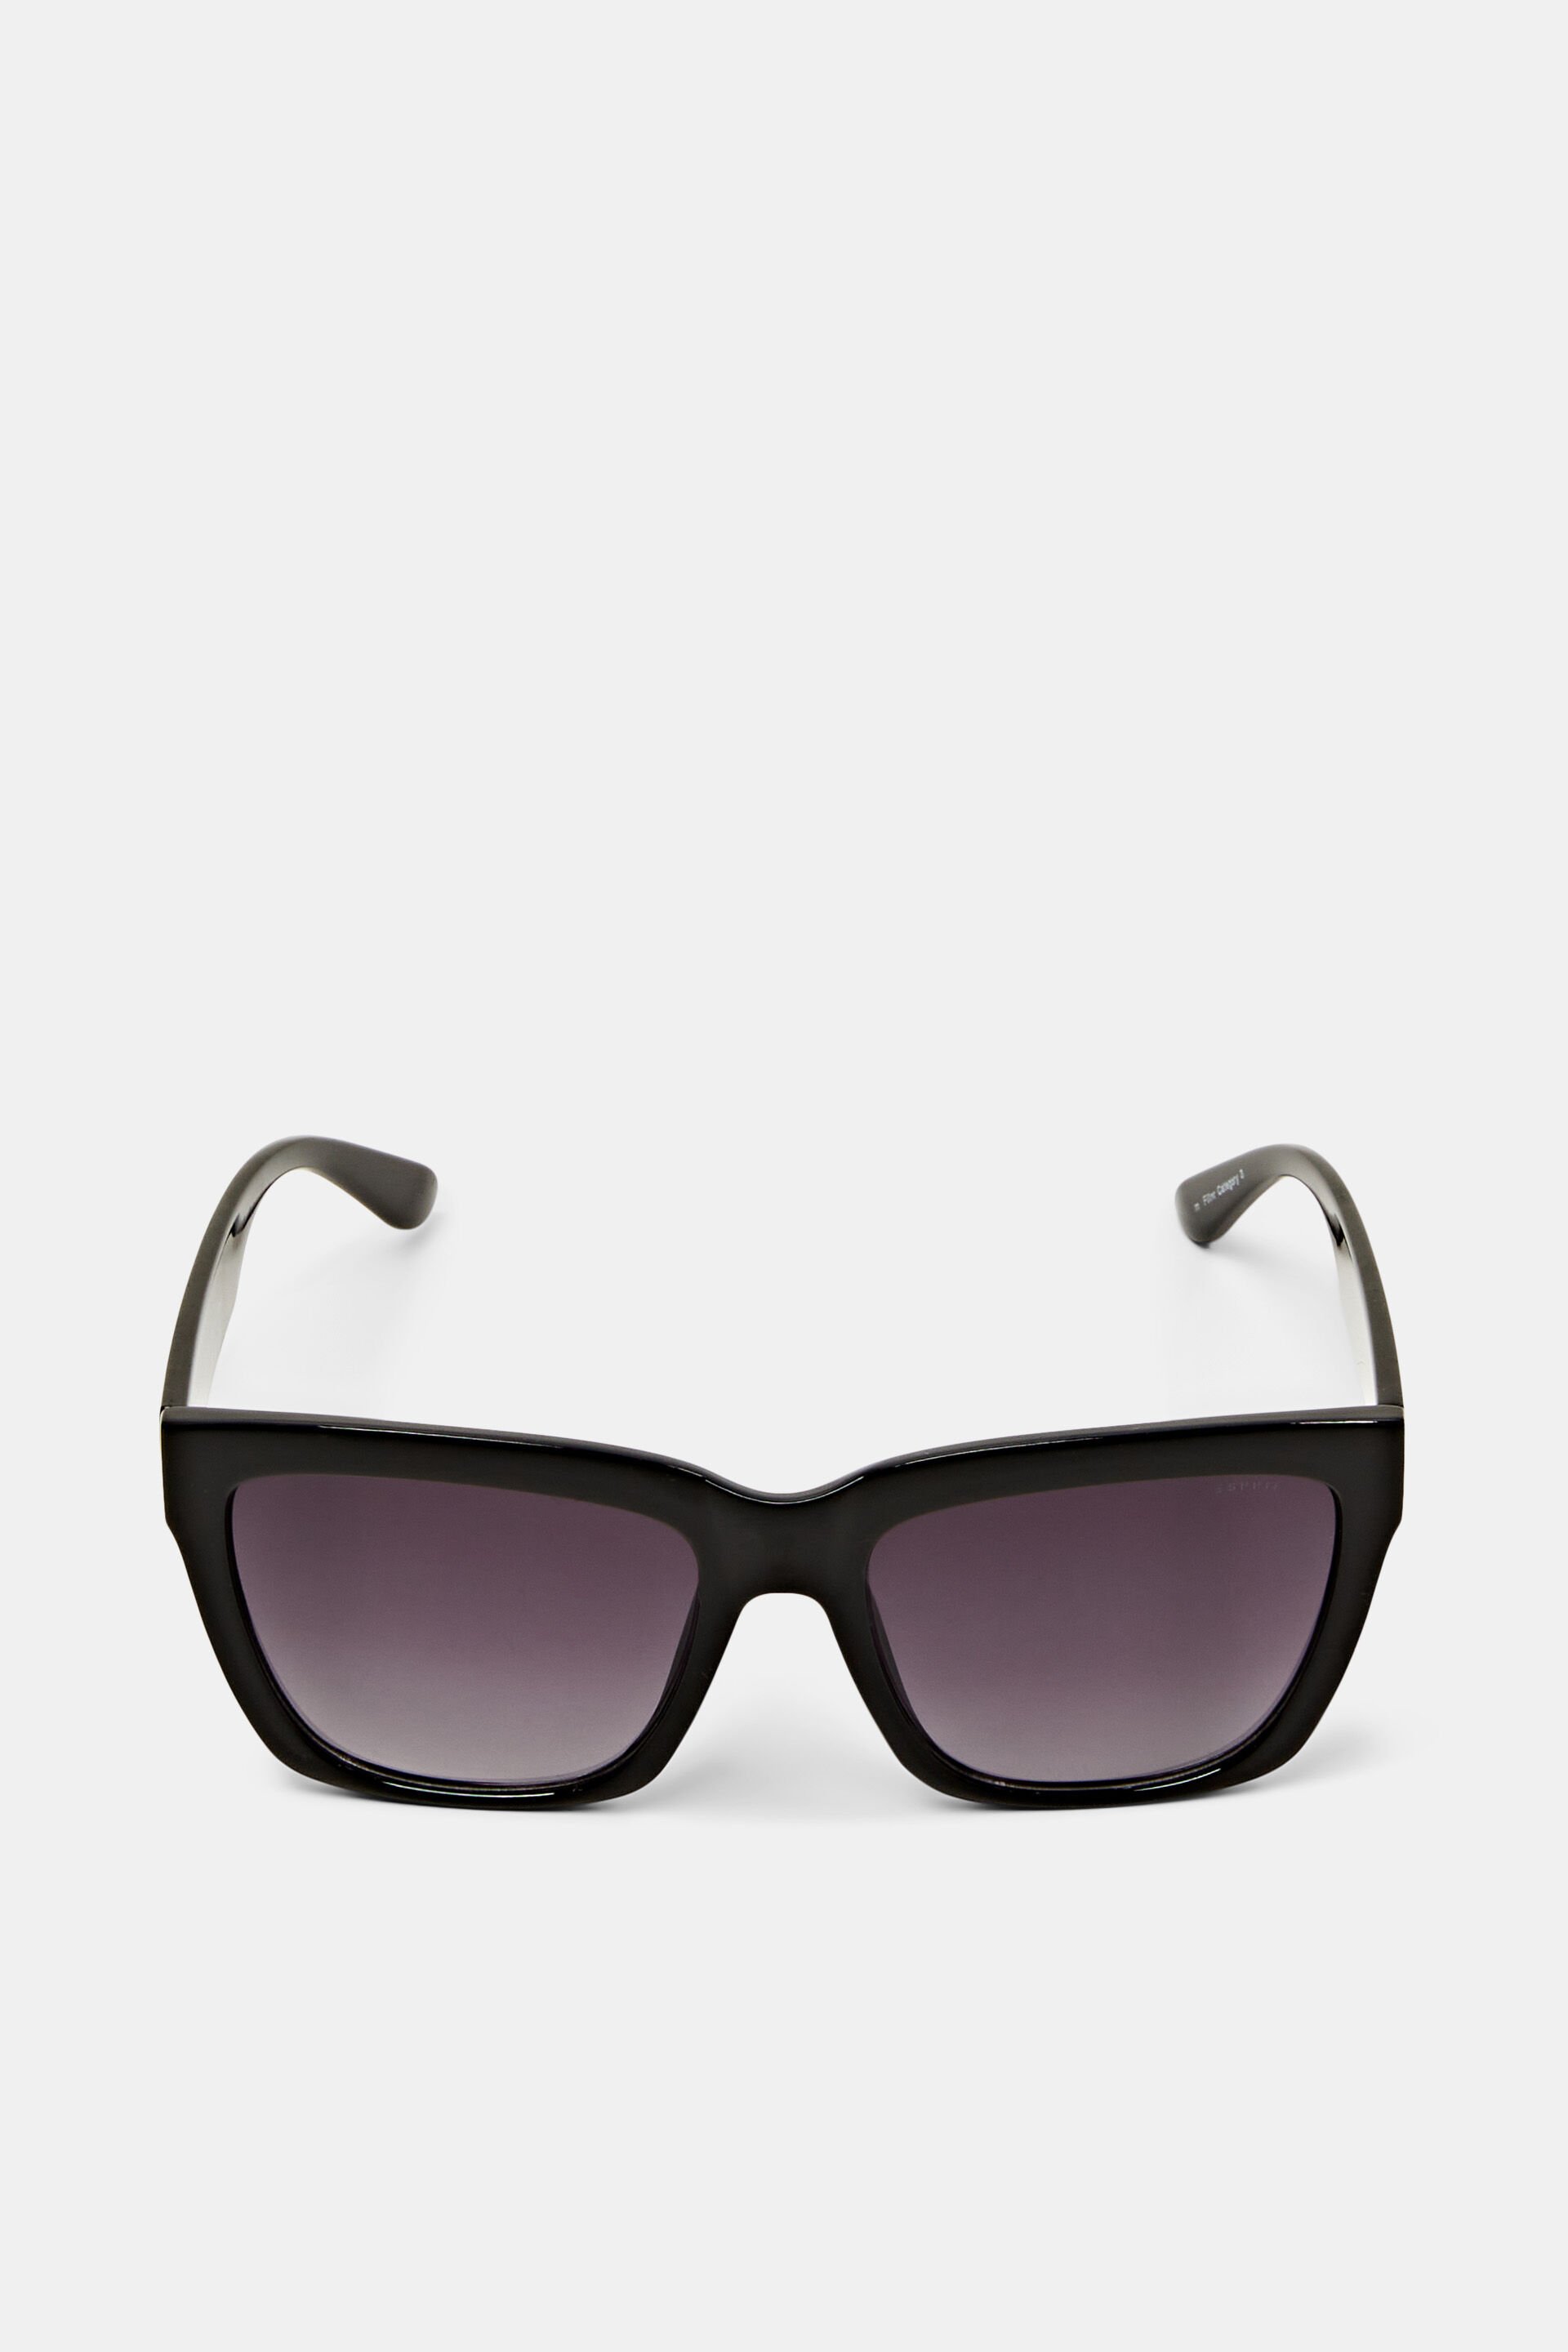 Esprit frame Bulky sunglasses